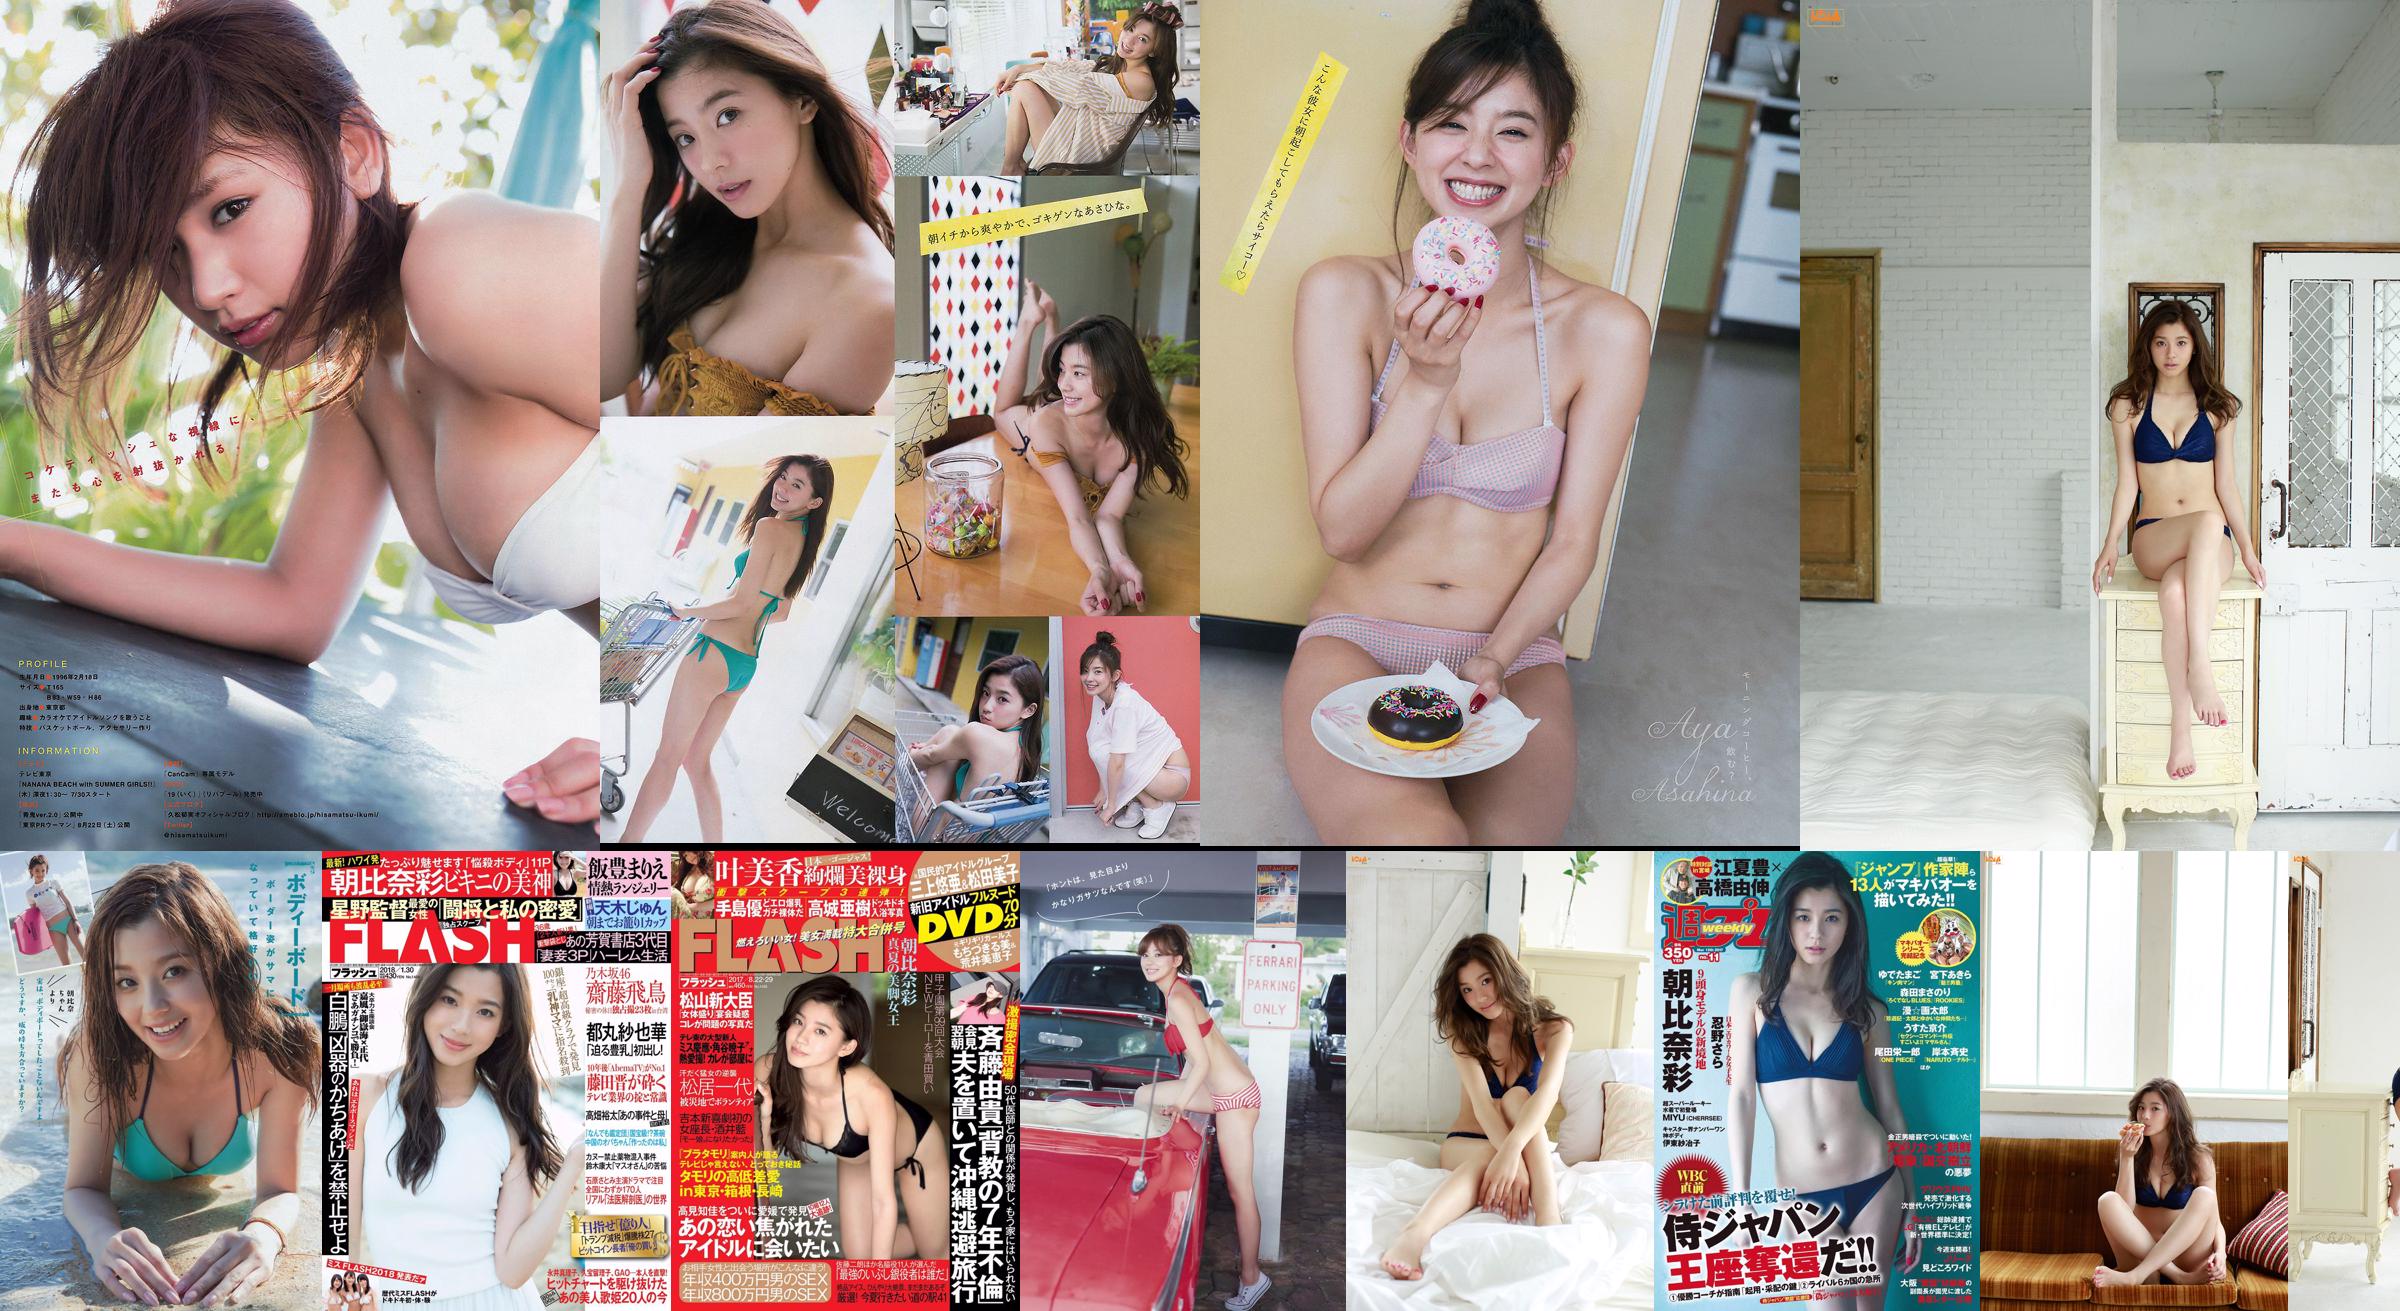 [Young Magazine] Asahina Aya Hisamatsu Yumi Tomaru Sayaka 2015 No.32 Photo Magazine No.12bc5a Page 1